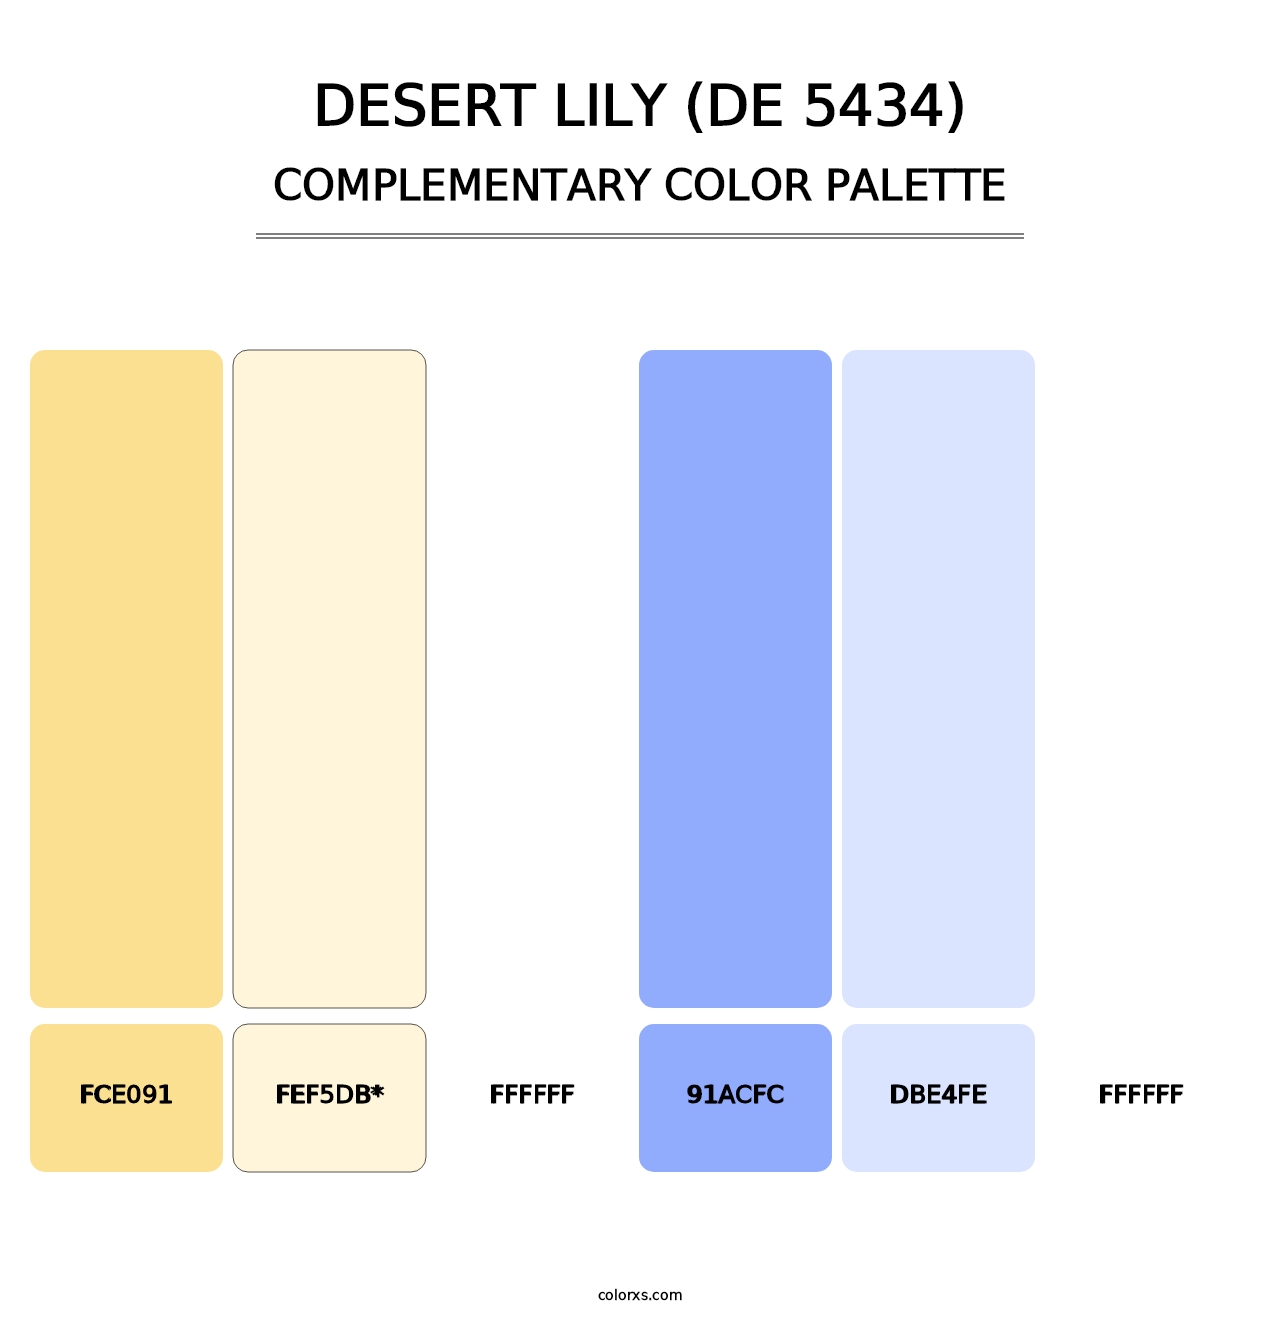 Desert Lily (DE 5434) - Complementary Color Palette